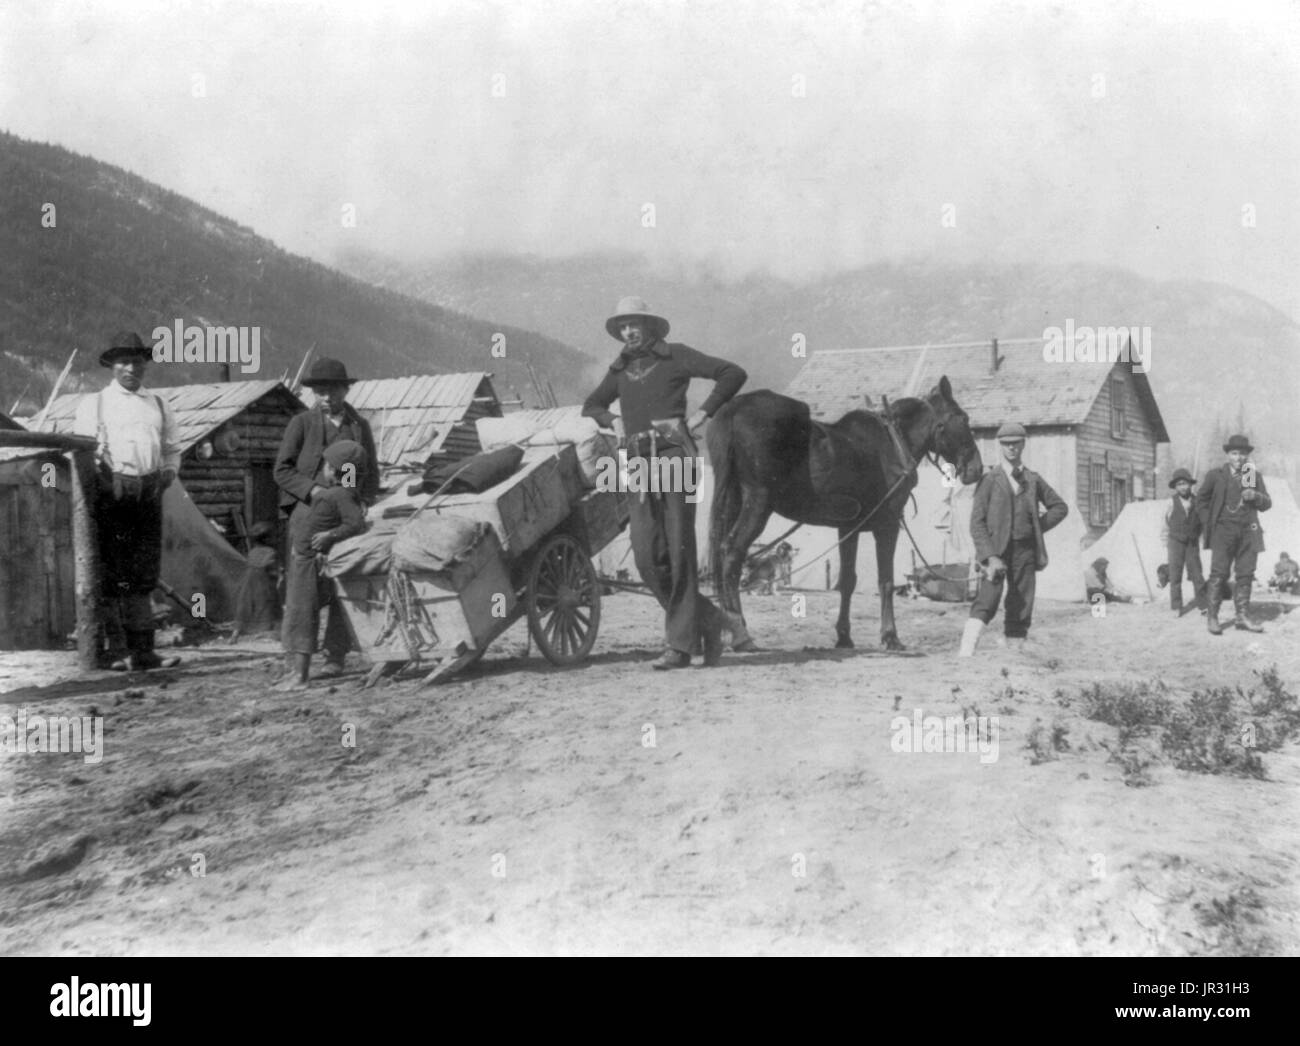 Klondike carro caricato con disposizioni. Il Klondike Gold Rush è stata una migrazione da una stima di 100.000 i cercatori per il Klondike regione dello Yukon tra 1896-99. L'oro è stato scoperto da minatori locale il 16 agosto 1896 e, quando la notizia giunse a Seattle e San Francisco, scatterà un parapiglia di potrebbe essere cercatori d'oro. Per raggiungere i campi di oro La maggior parte ha preso il via attraverso i porti di Dyea e Skagway in Alaska. Qui, la Klondikers potrebbe seguire la Chilkoot o il Pass bianco sentieri per il fiume di Yukon e navigare verso il basso per il Klondike. Ciascuno di essi è stato necessario per portare un anno di fornitura di fo Foto Stock